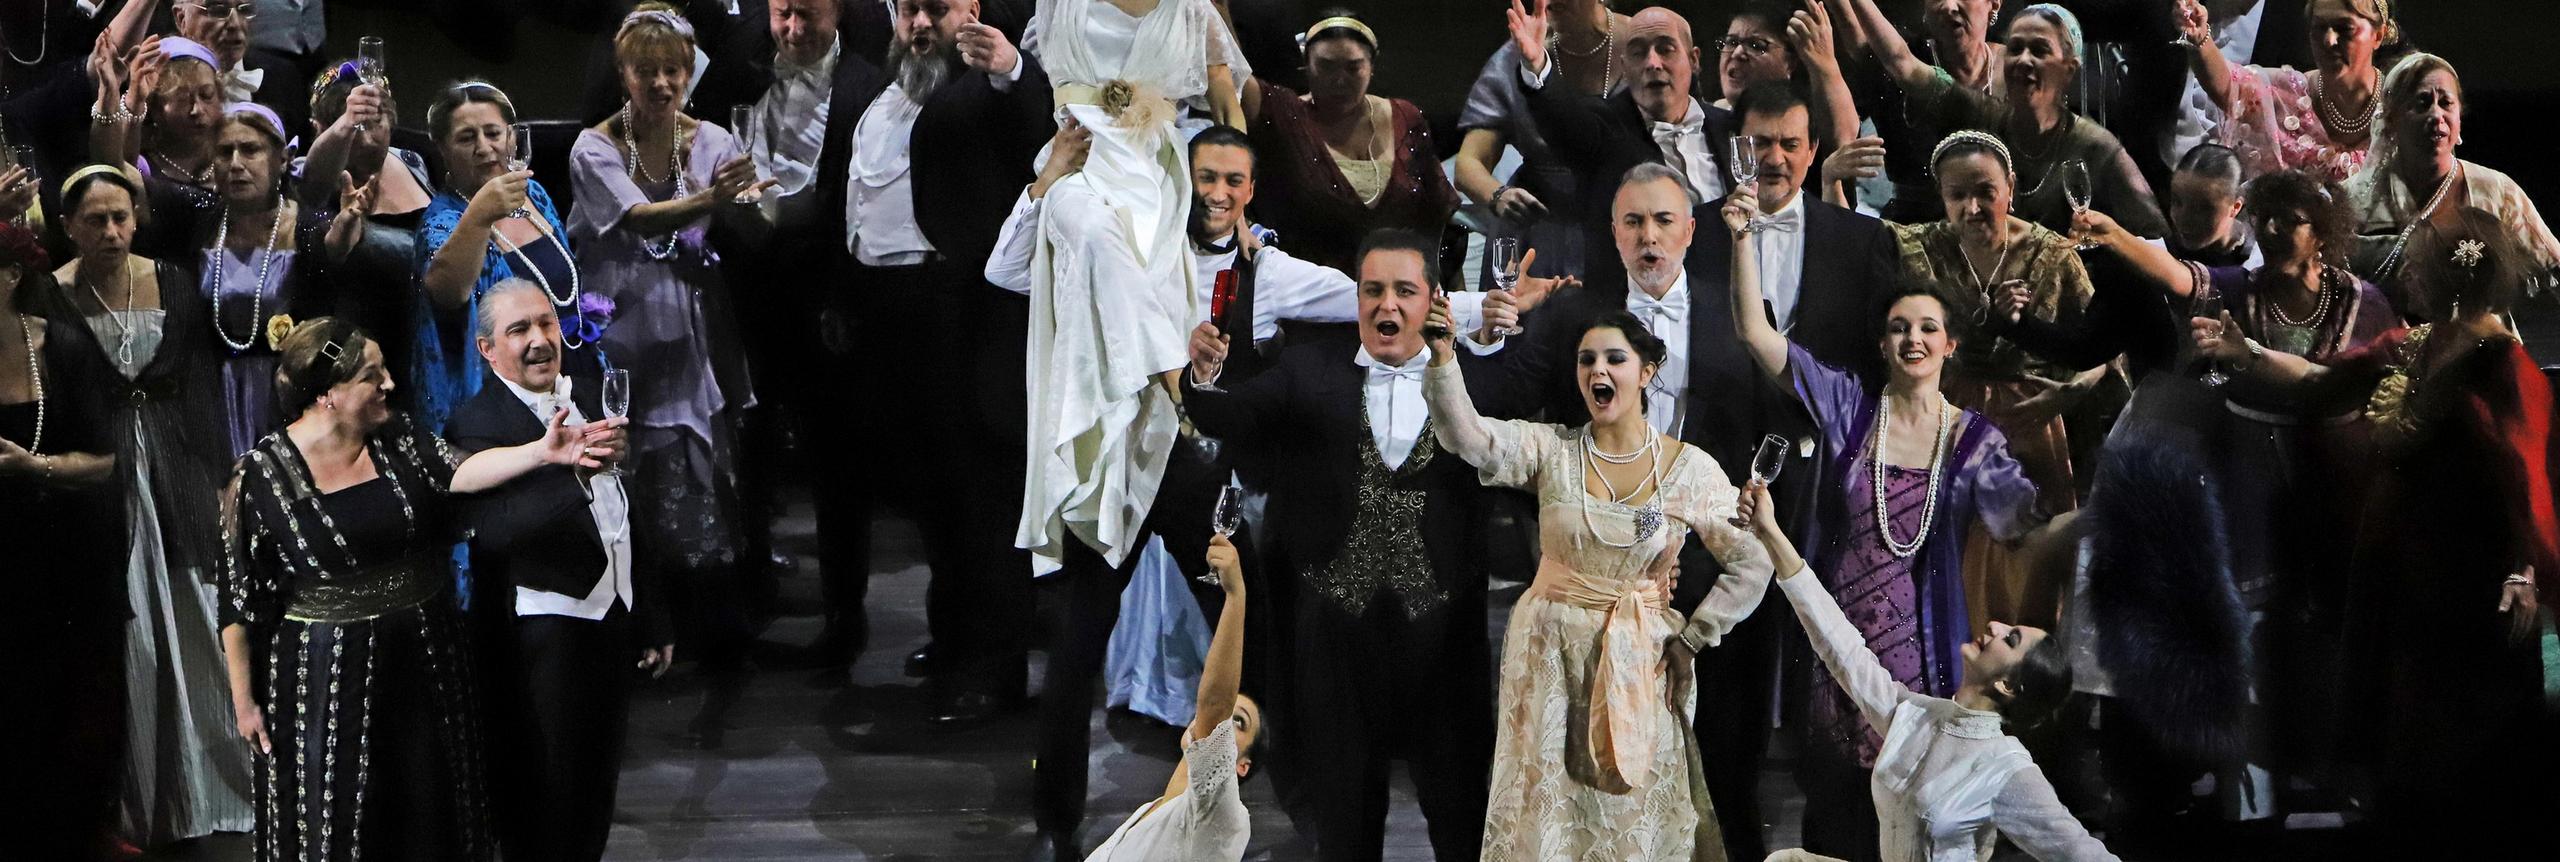 La tanto attesa Traviata riminese ha stregato e commosso la platea - Corriere Romagna